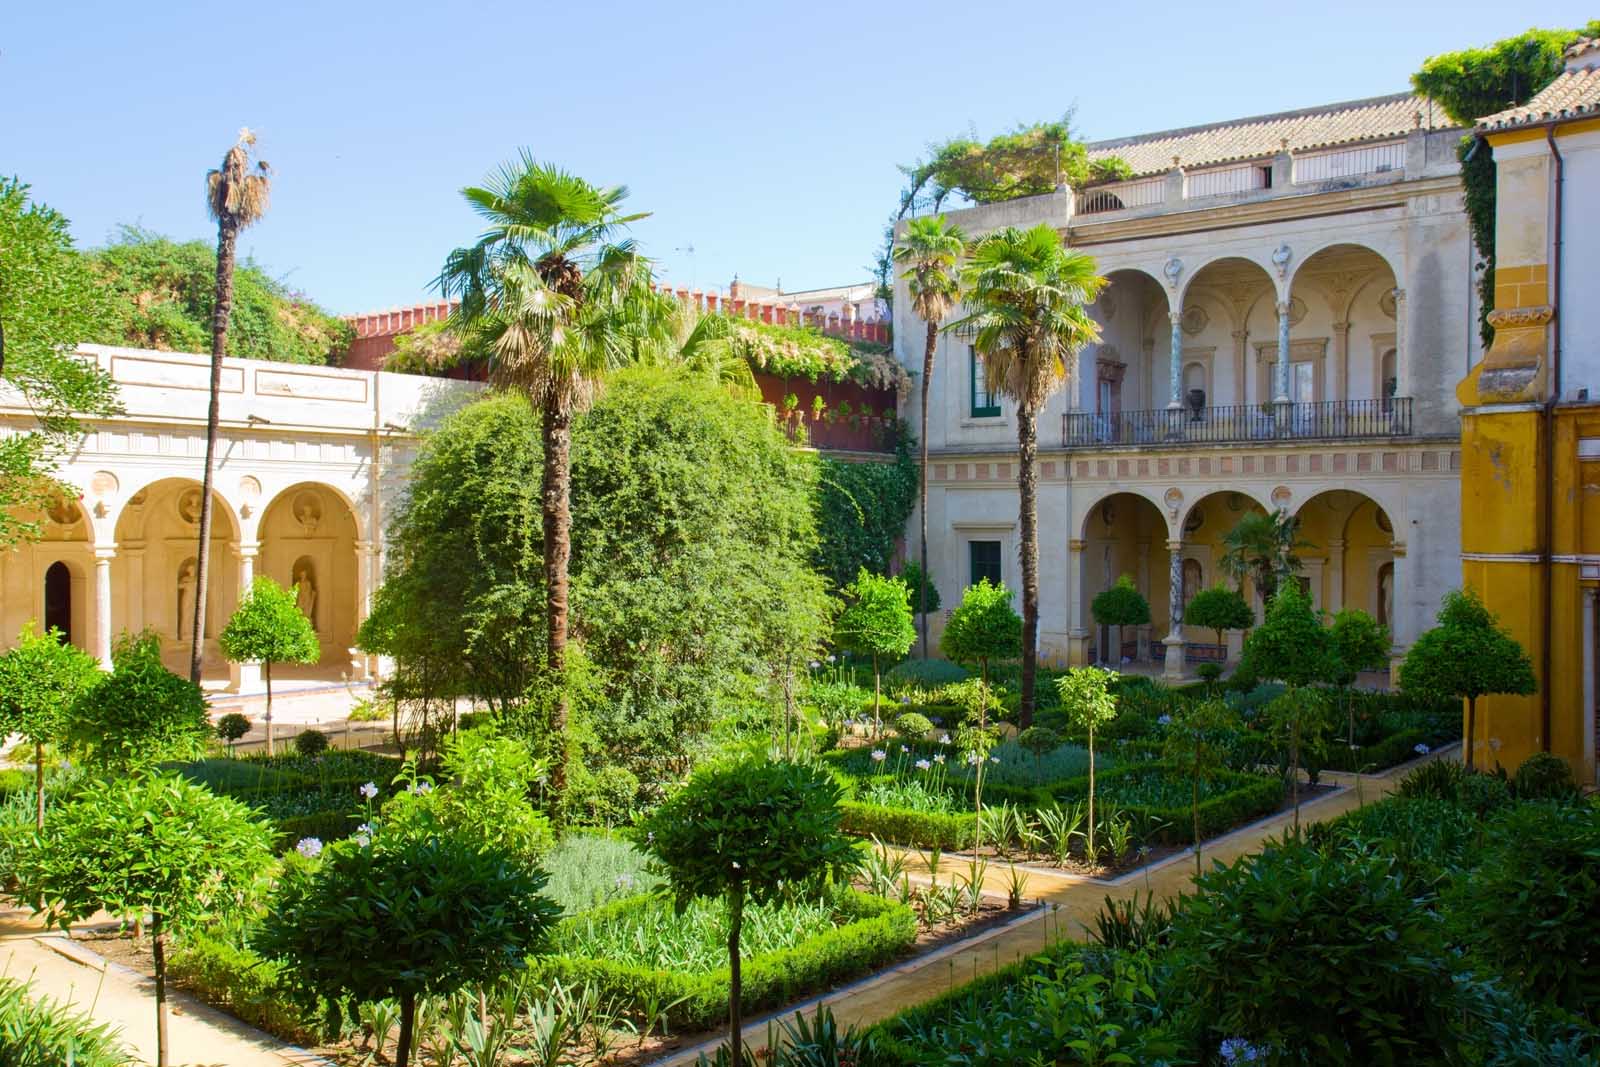 places to visit in seville spain Casa de Pilatos